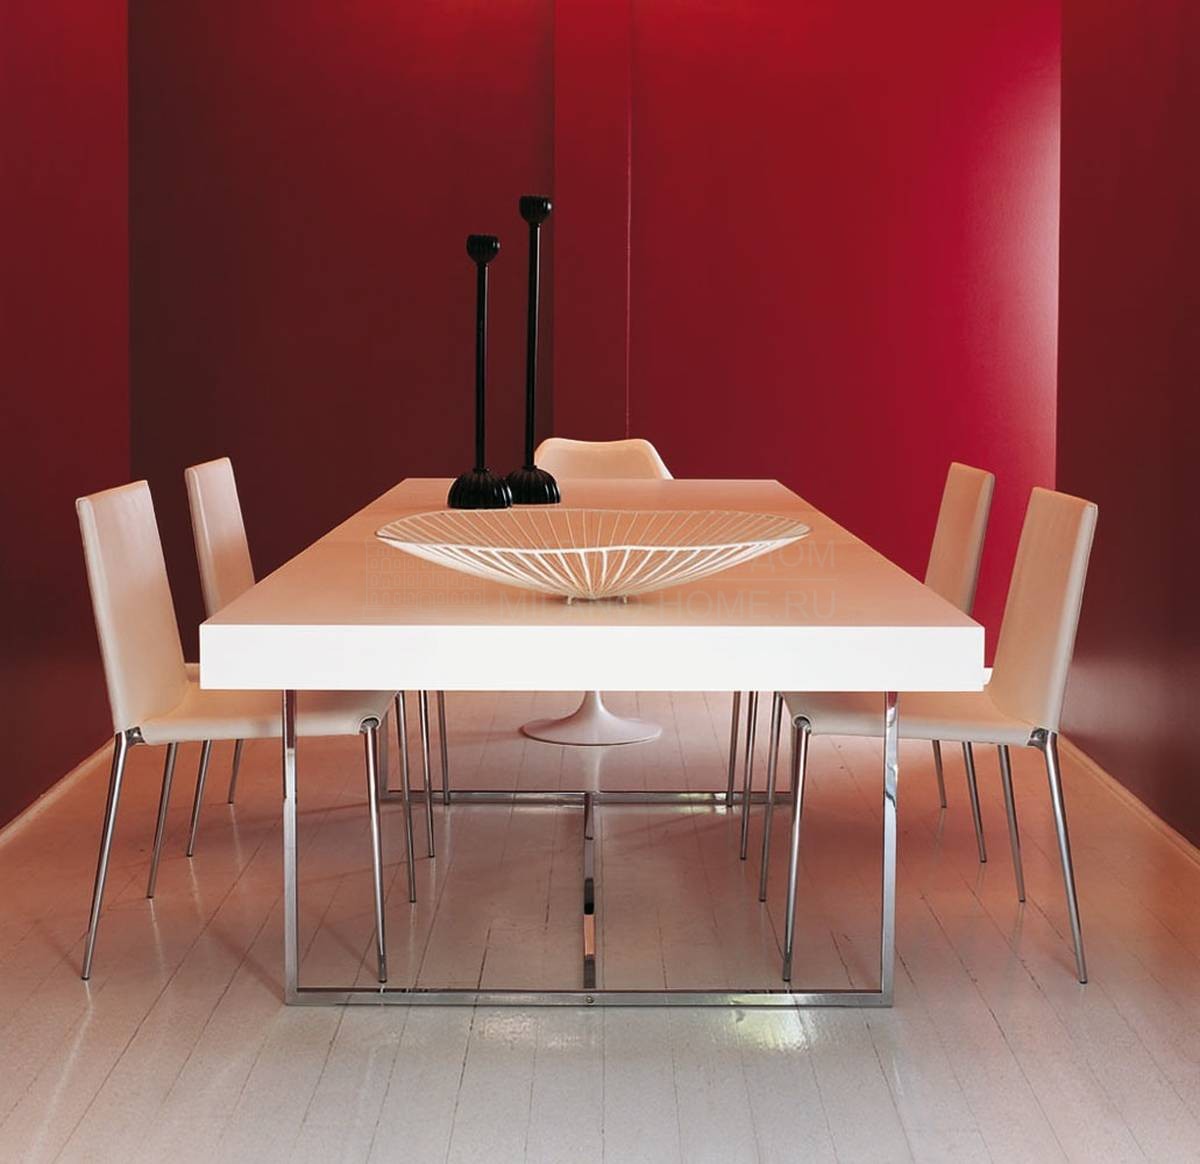 Столы обеденные Athos / art.TAH200/F, TAH200/A из Италии фабрики B&B MAXALTO